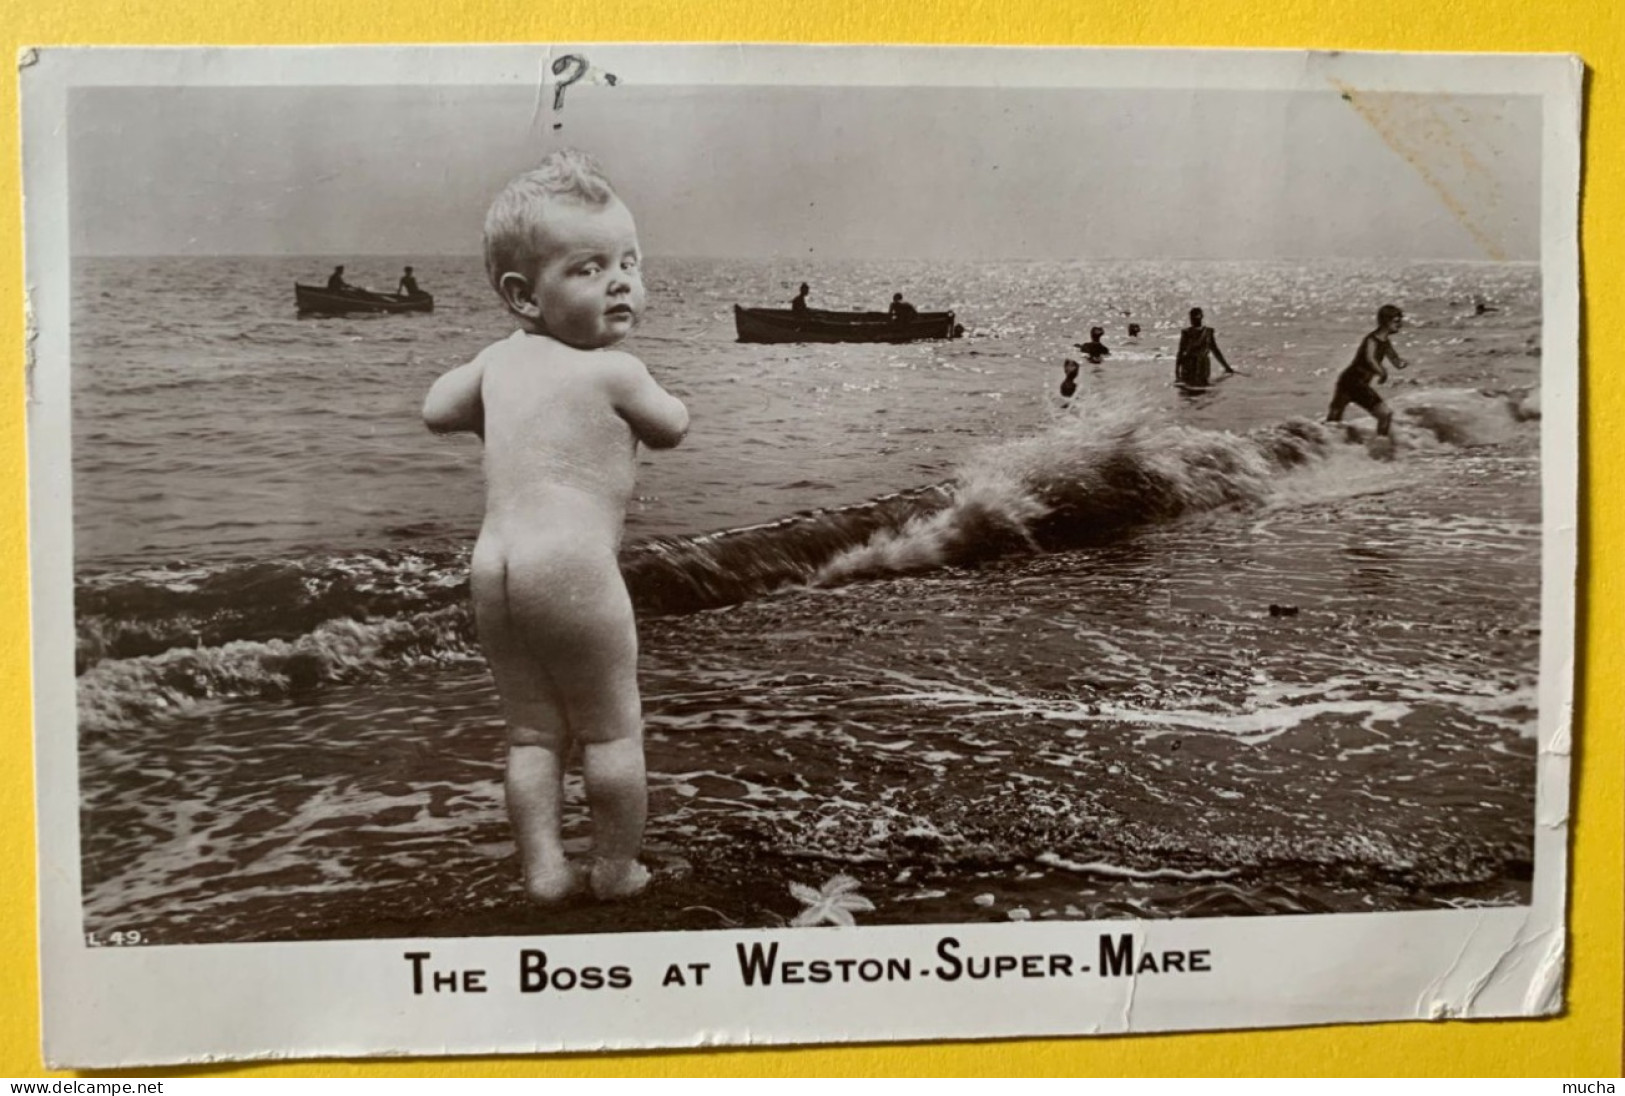 19579 - The Boss At Weston.Super-Mare - Weston-Super-Mare